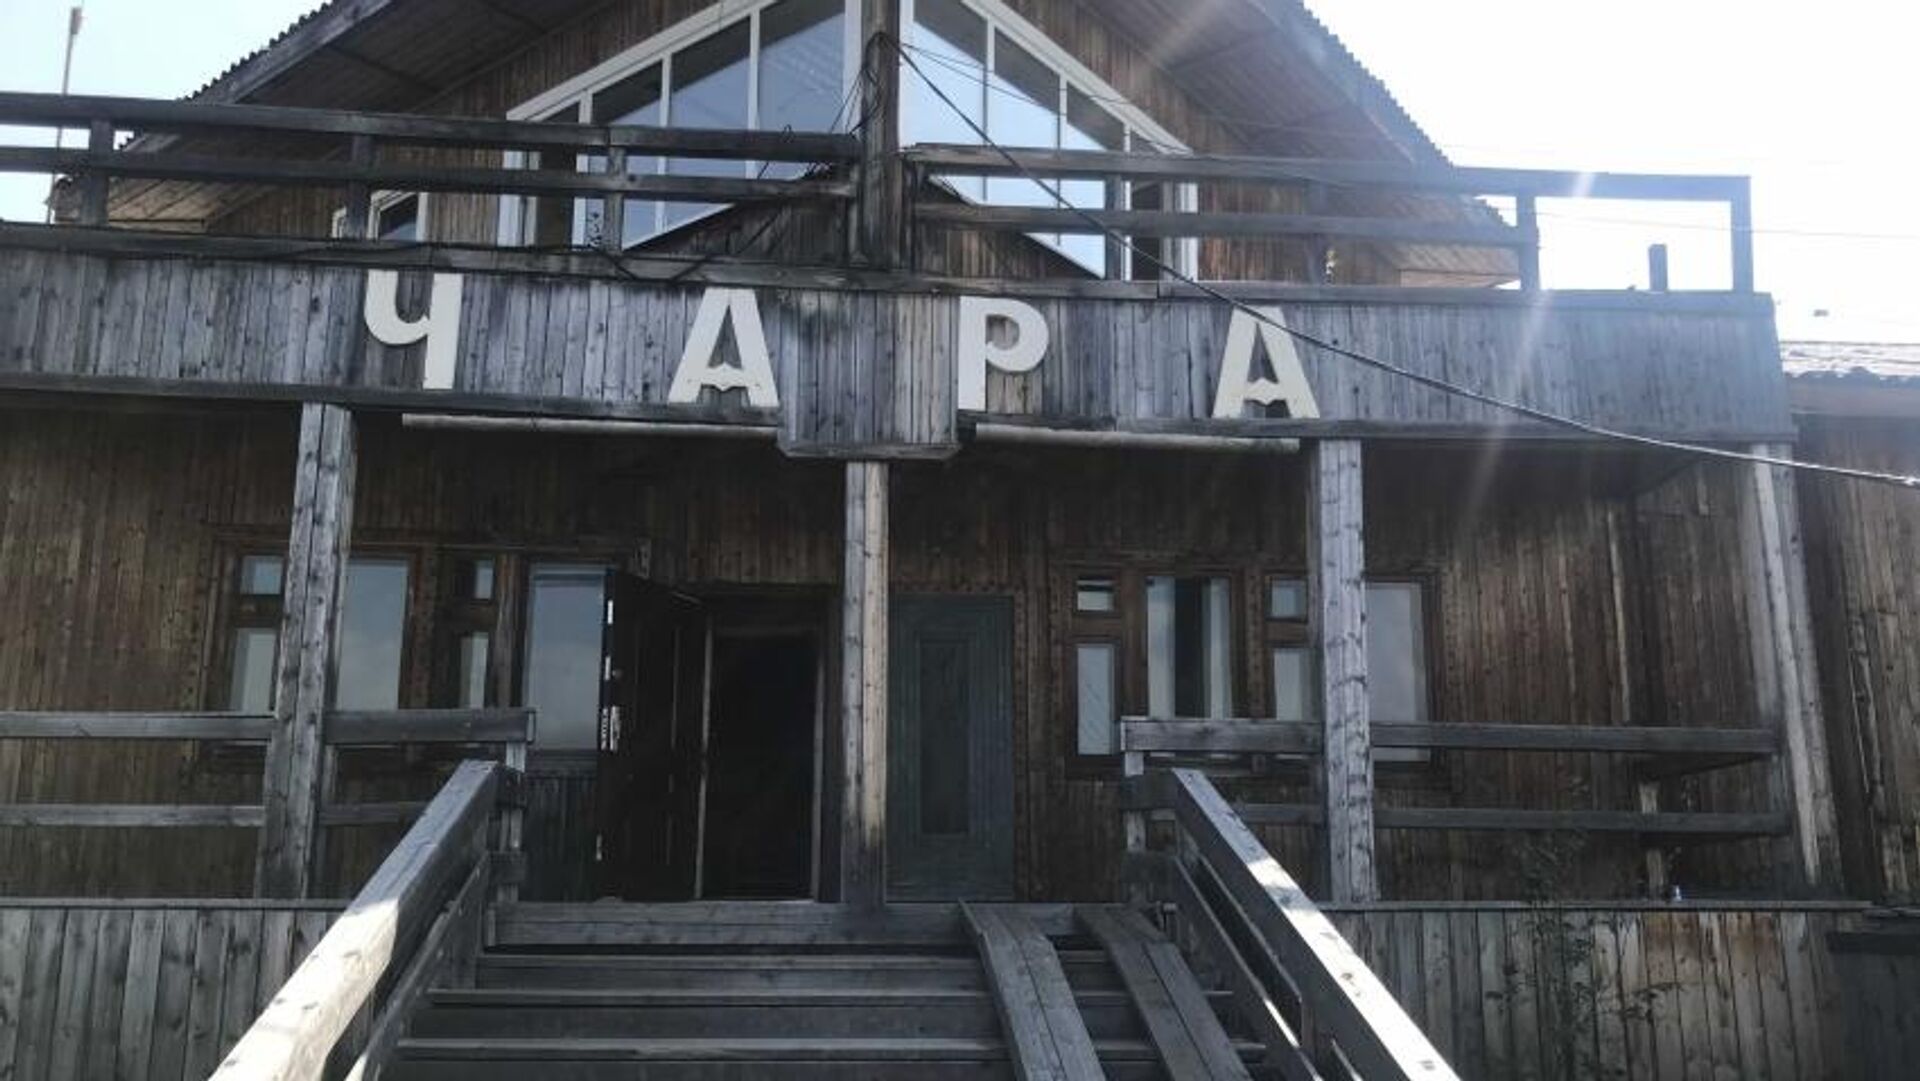 Реконструкция аэропорта Чара в Забайкалье начнется на два года раньше - РИА Новости, 1920, 19.03.2021